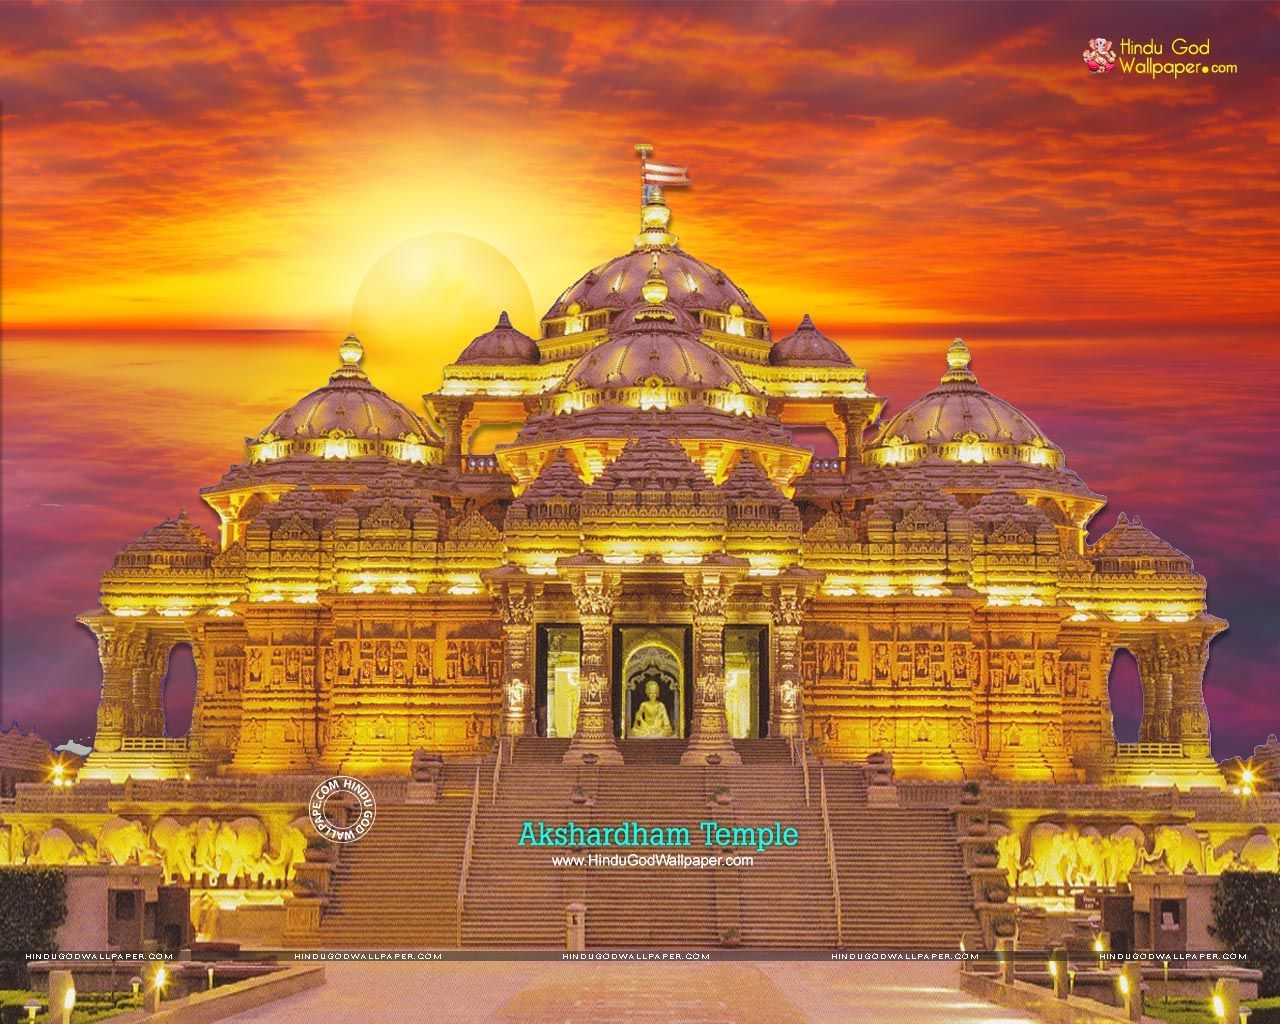 Akshardham Mandir Wallpaper, Photo & Image Download. Cool places to visit, Tour packages, Tourist places